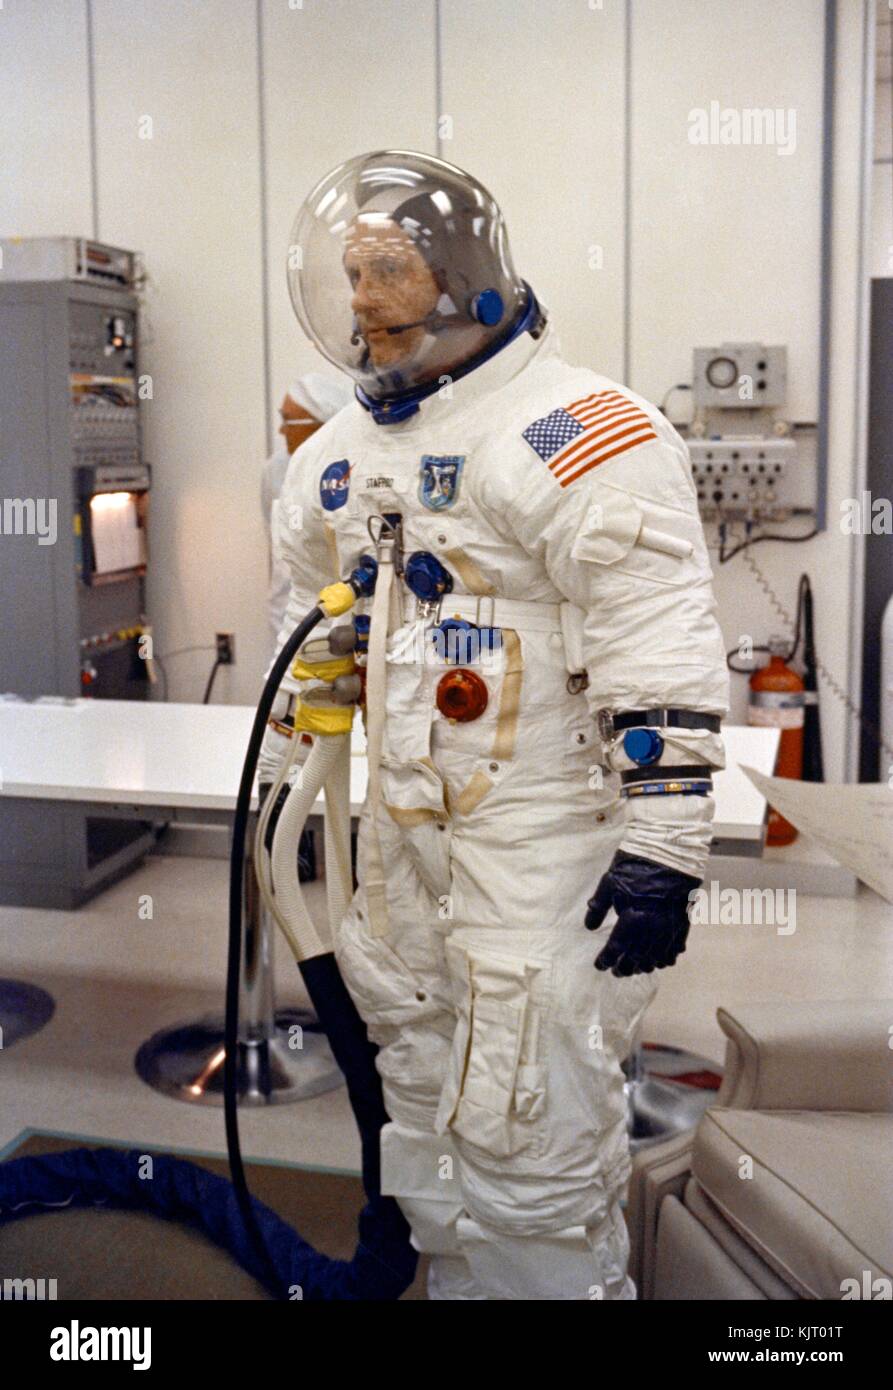 La NASA misión orbital lunar Apolo 10 el primer miembro de la tripulación,  el astronauta estadounidense Thomas Stafford, trajes en un traje espacial  durante los preparativos de pre-lanzamiento en el centro espacial